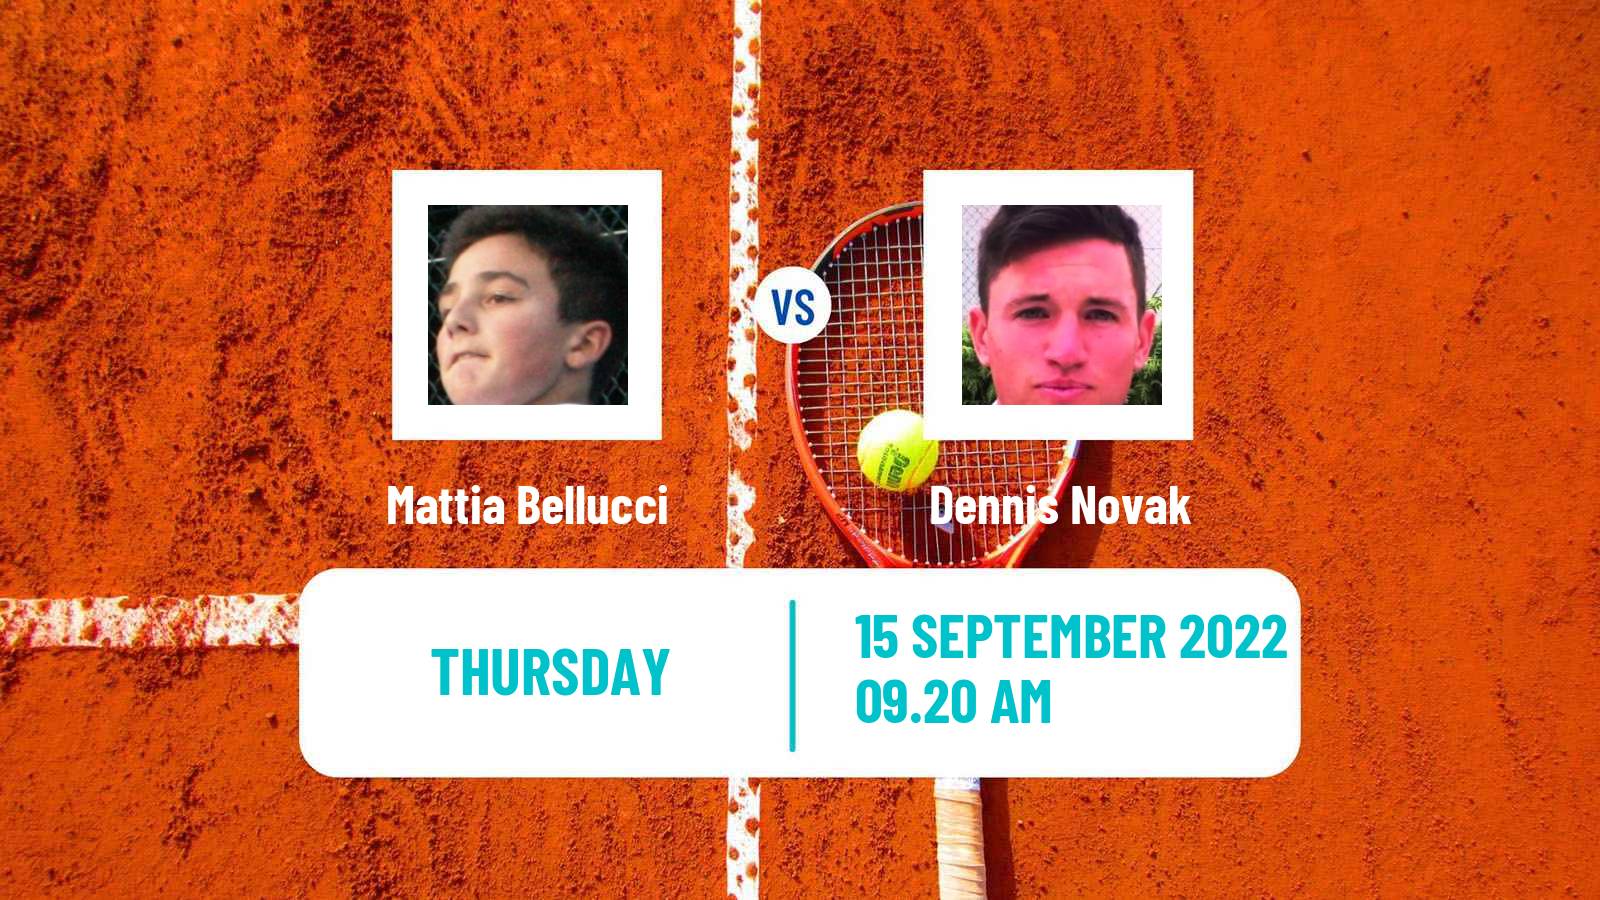 Tennis ATP Challenger Mattia Bellucci - Dennis Novak